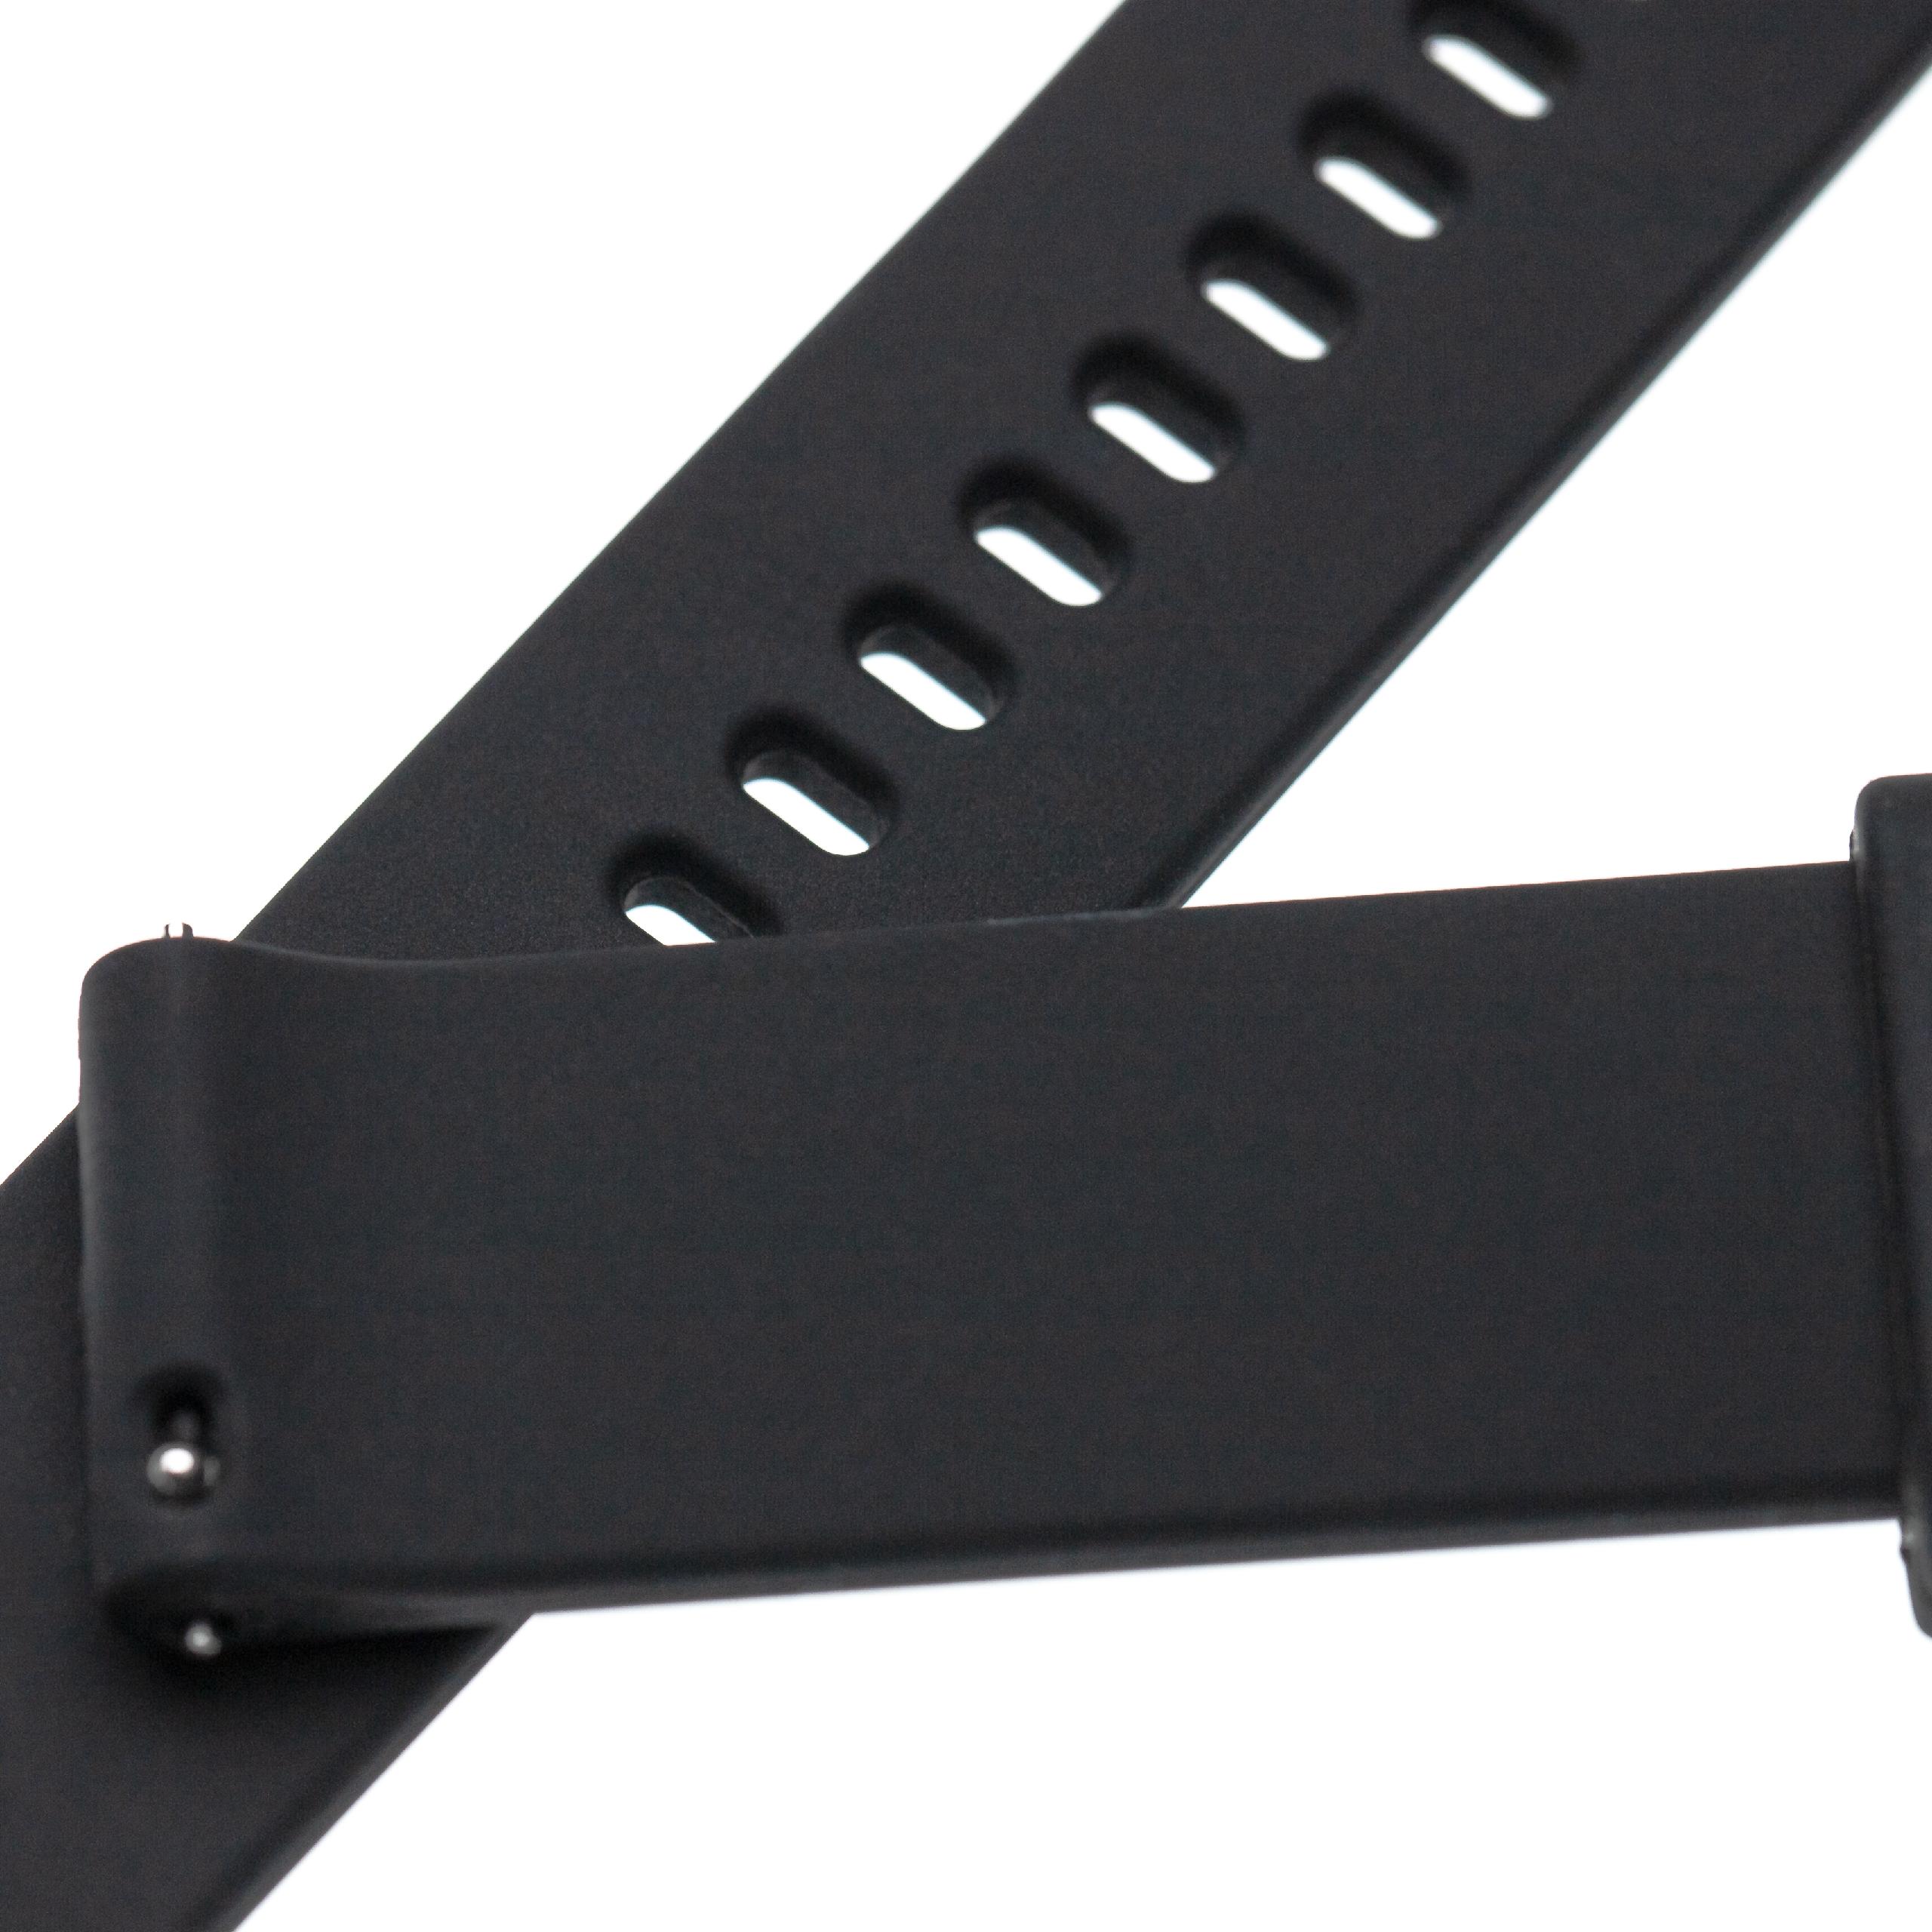 Armband für Garmin Smartwatch - 10,7 + 8,2 cm lang, 18mm breit, Silikon, schwarz